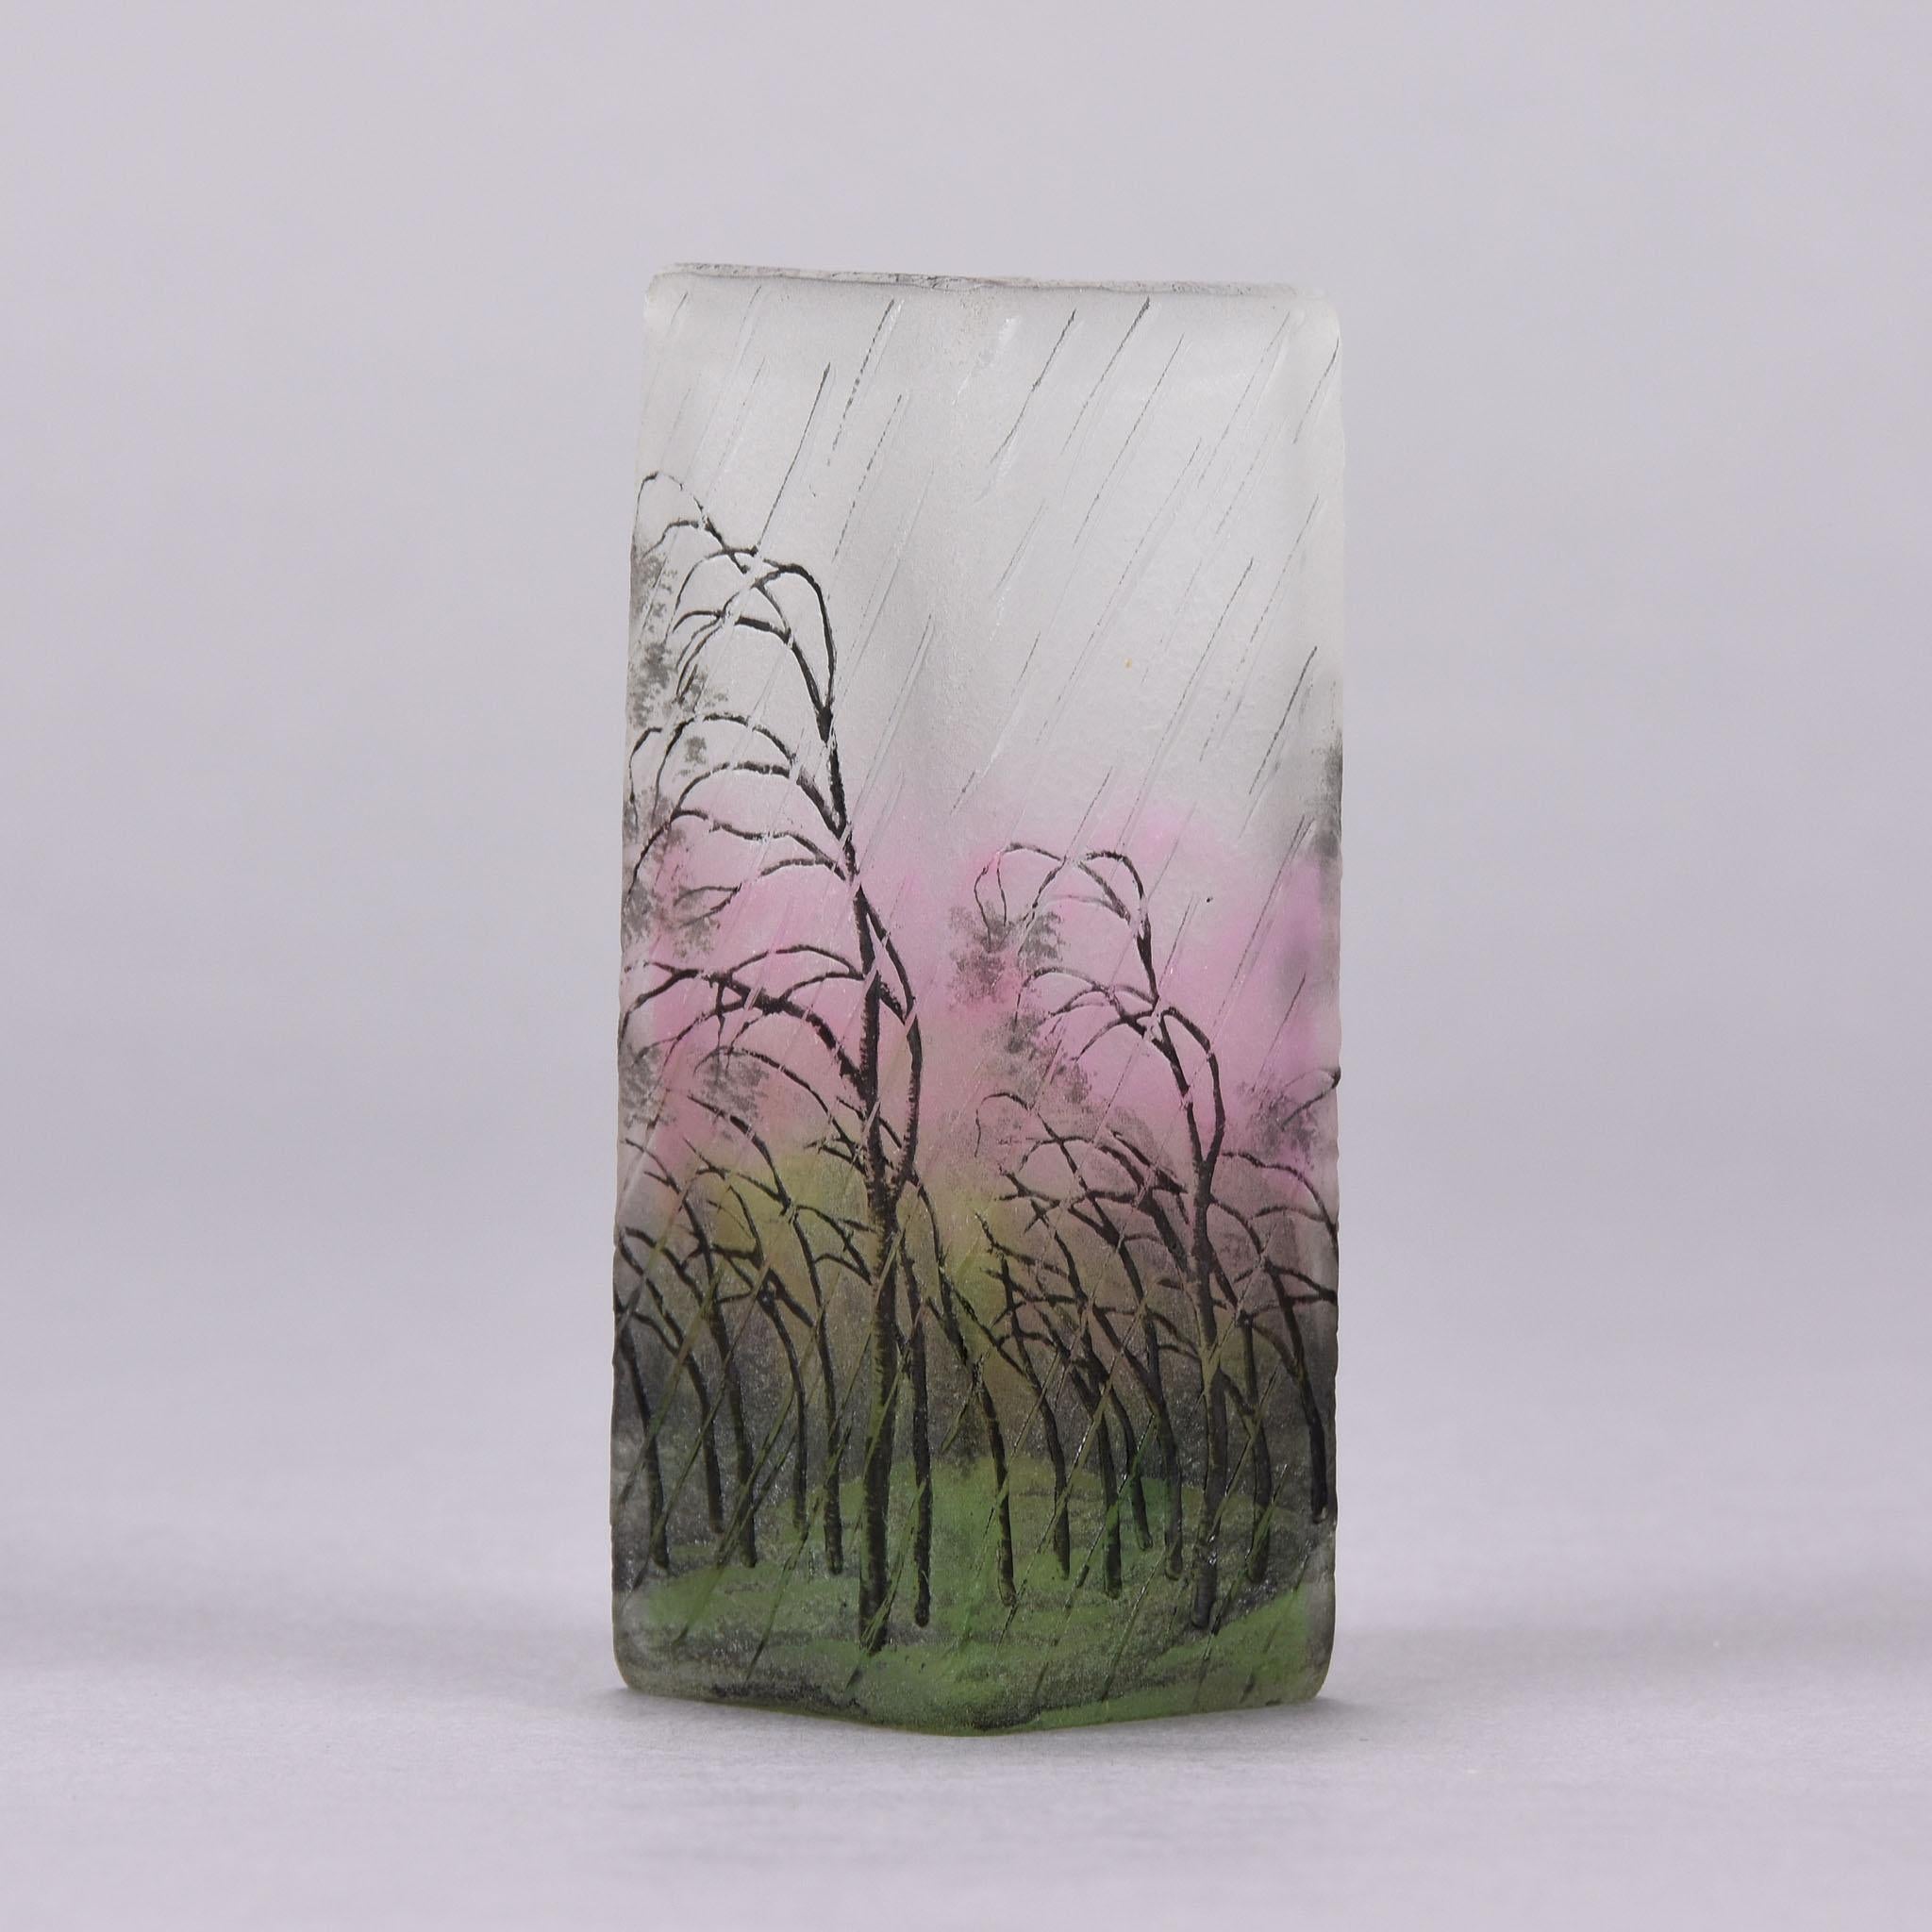 Un merveilleux vase en verre camée gravé et émaillé de bouleaux argentés courbés dans un paysage balayé par la pluie. Le design est rehaussé de couleurs rose et vertes profondes entrelacées à la surface pour donner une profondeur de champ